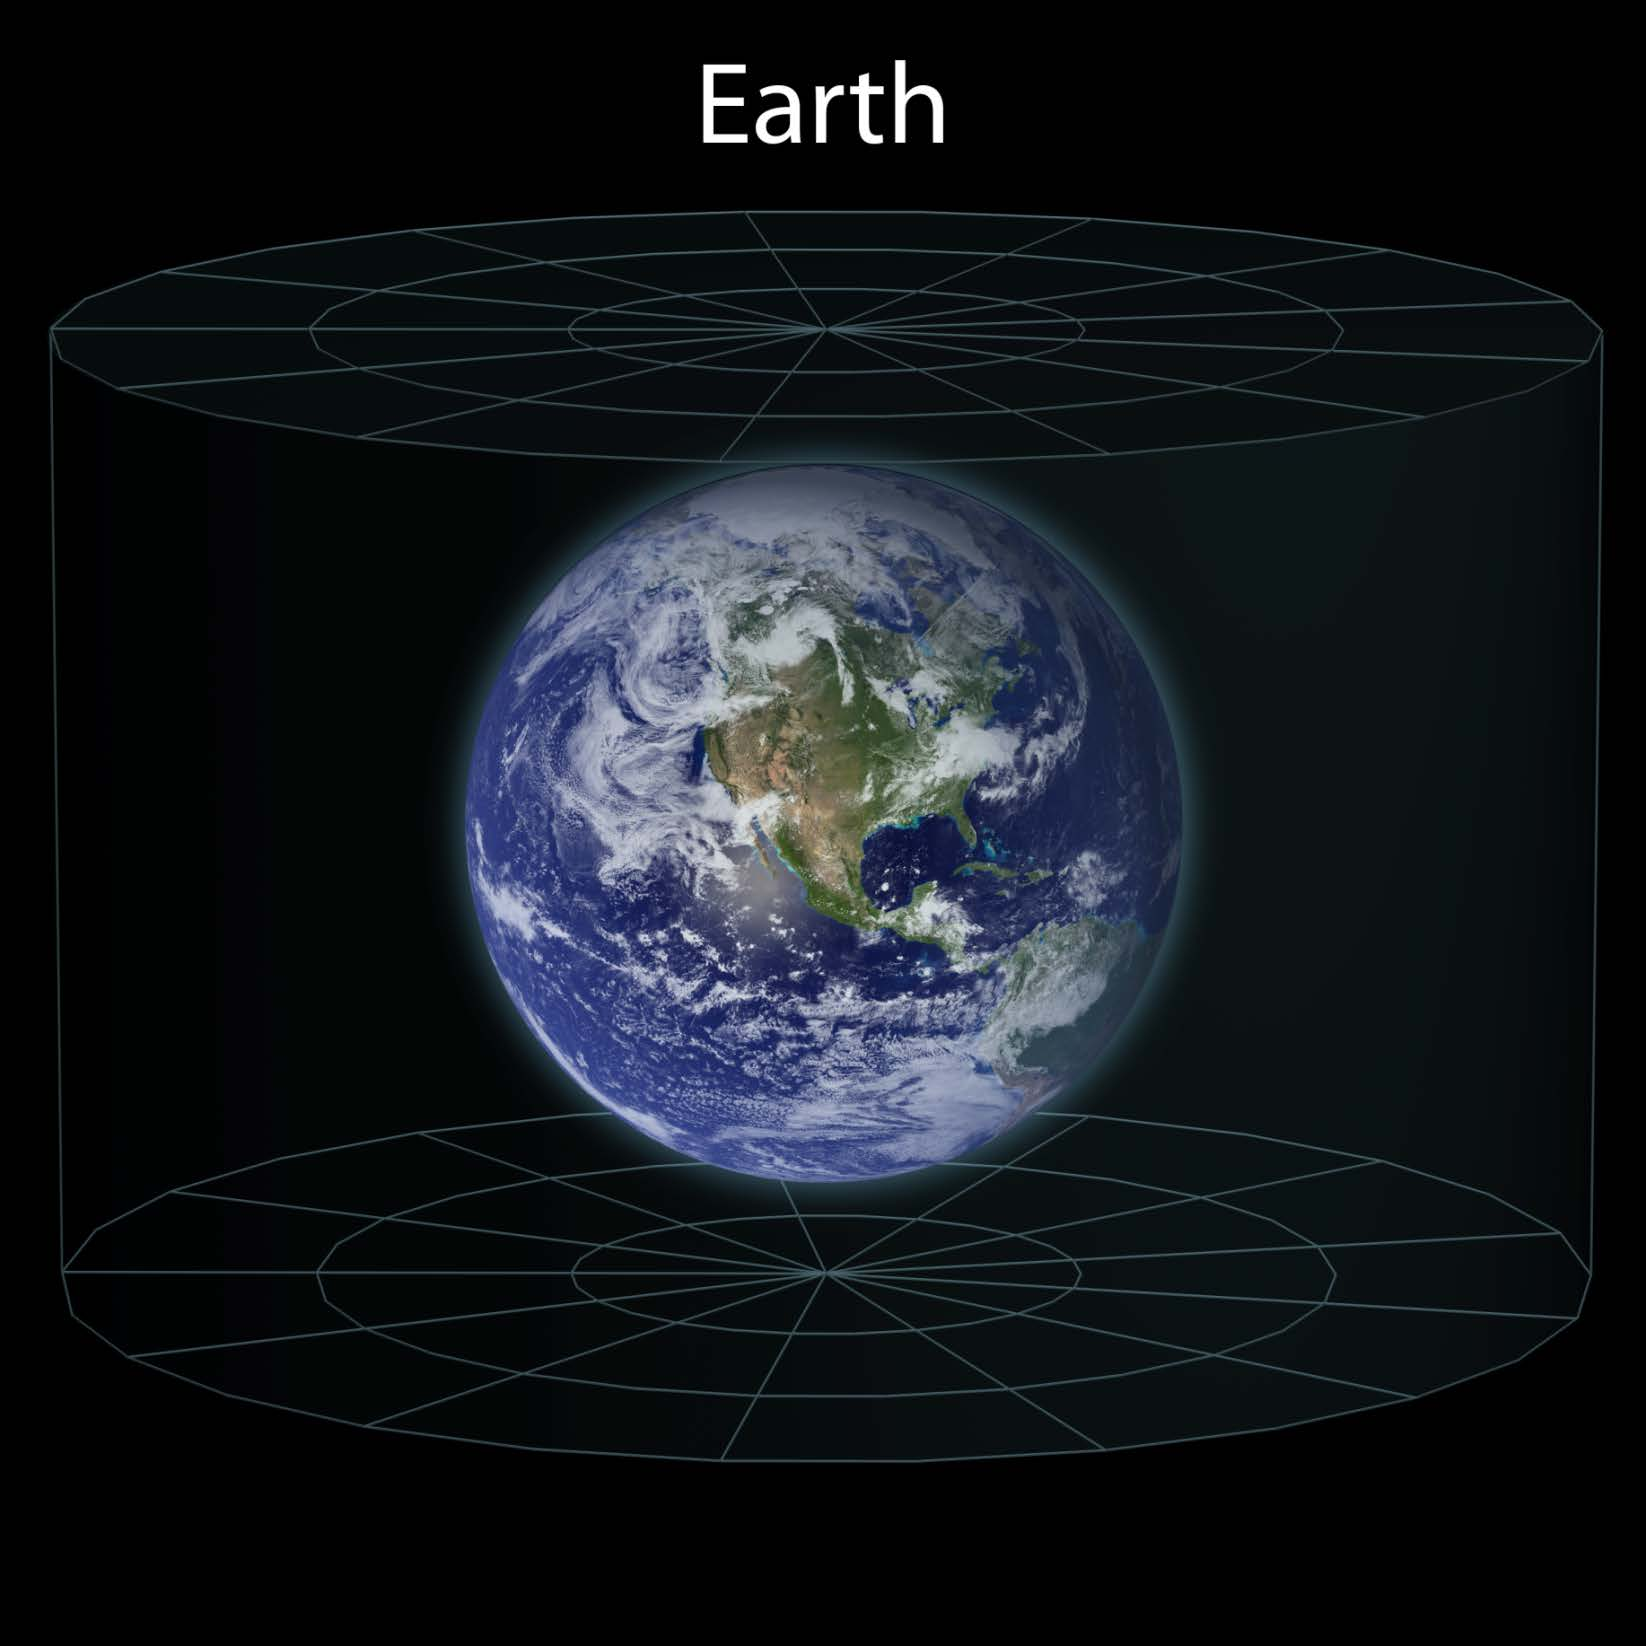 Erde Durchmesser 12 742 km 0,043